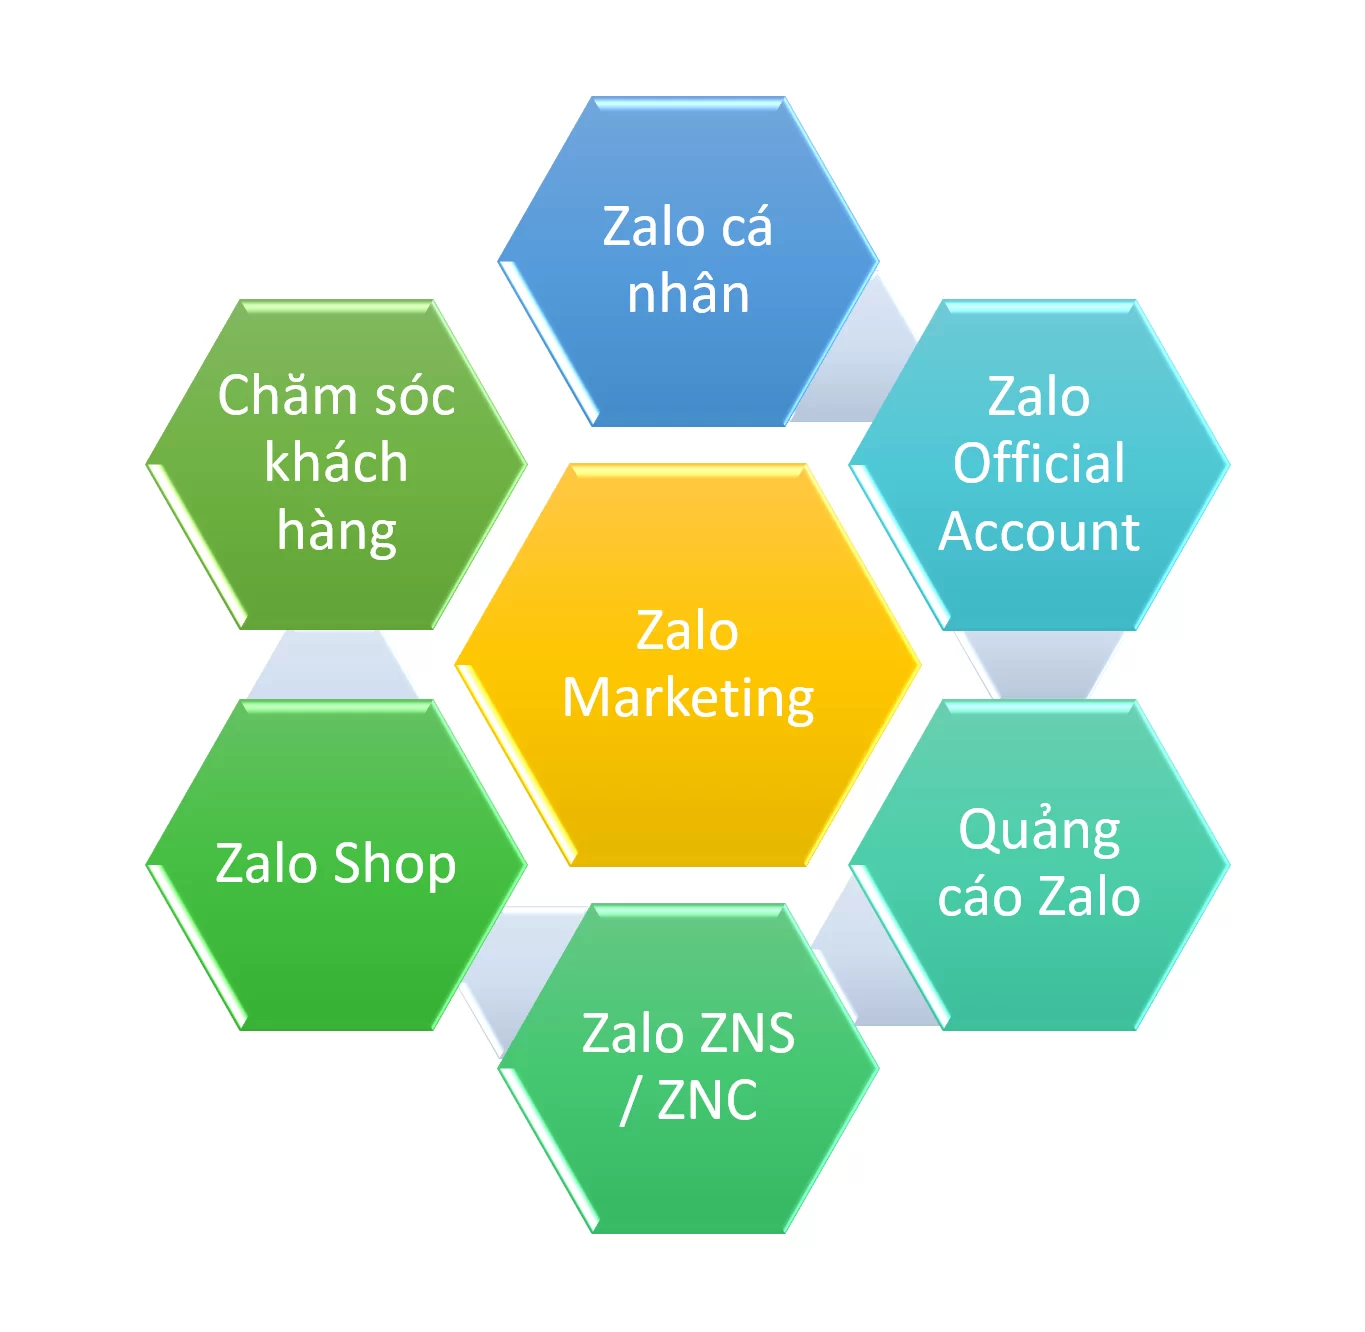 Các công cụ hỗ trợ thực hiện Zalo Marketing